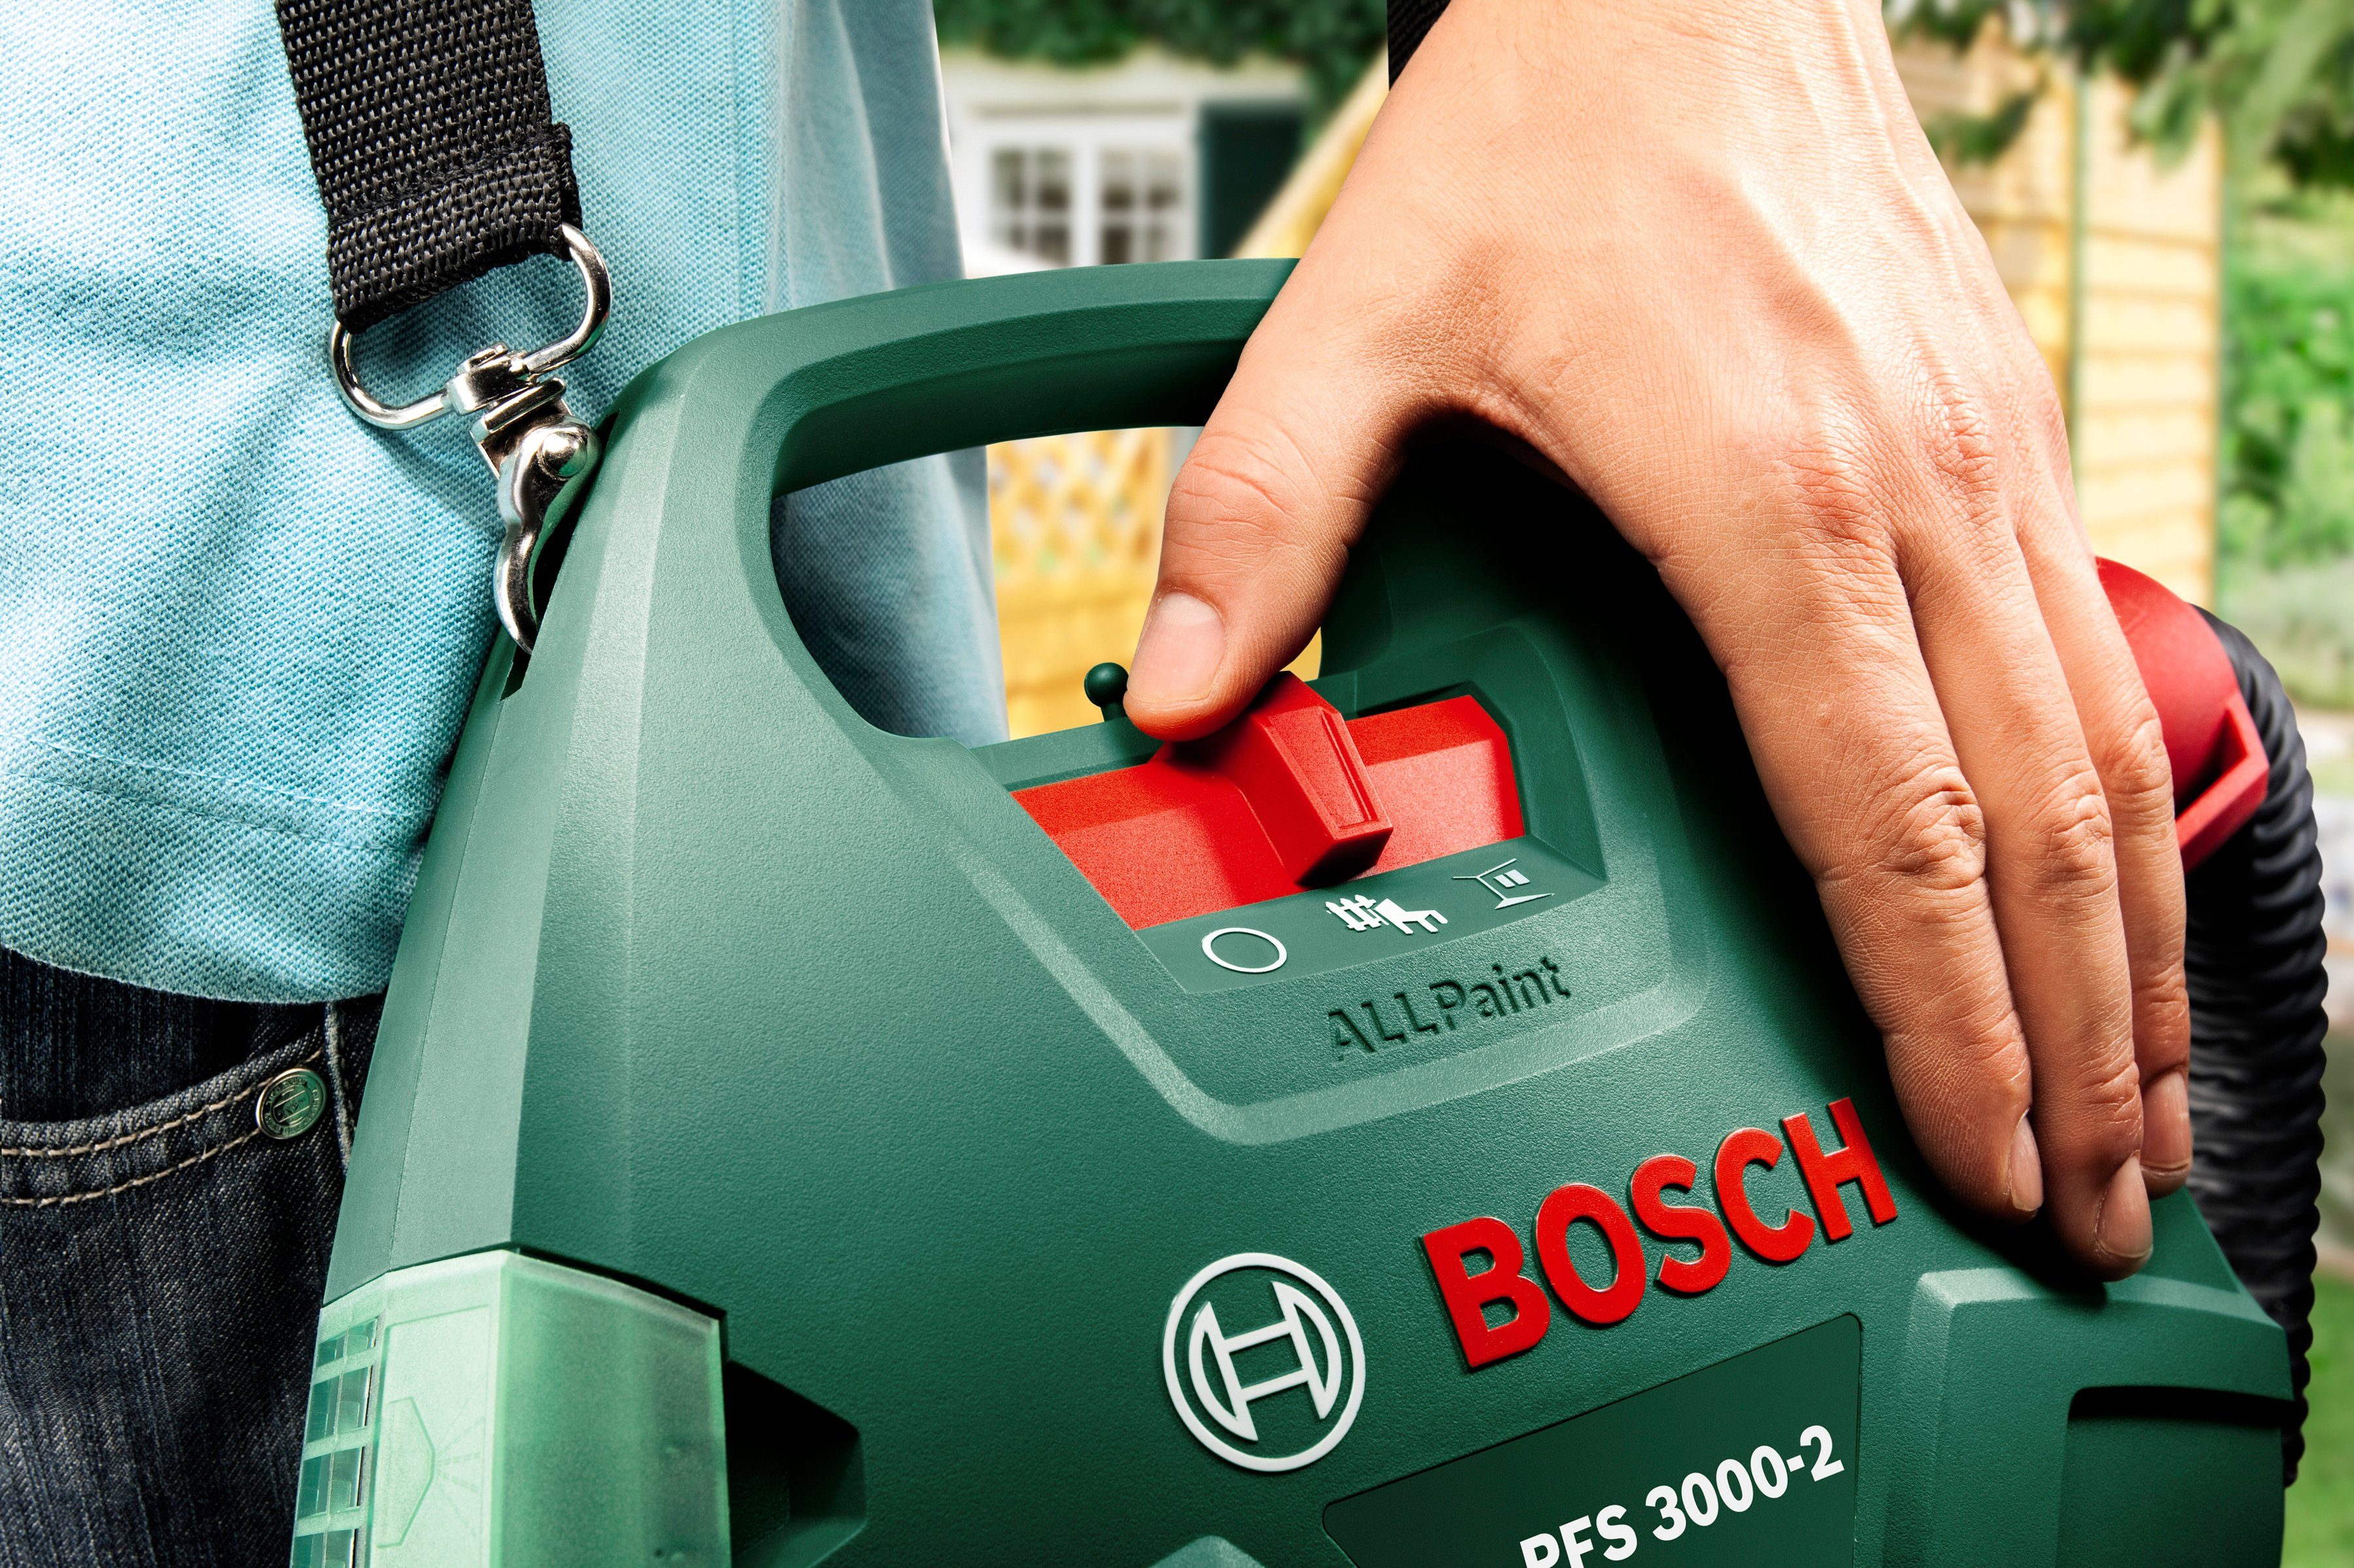 Farbsprühgerät & 3000-2 Home Bosch Garden PFS